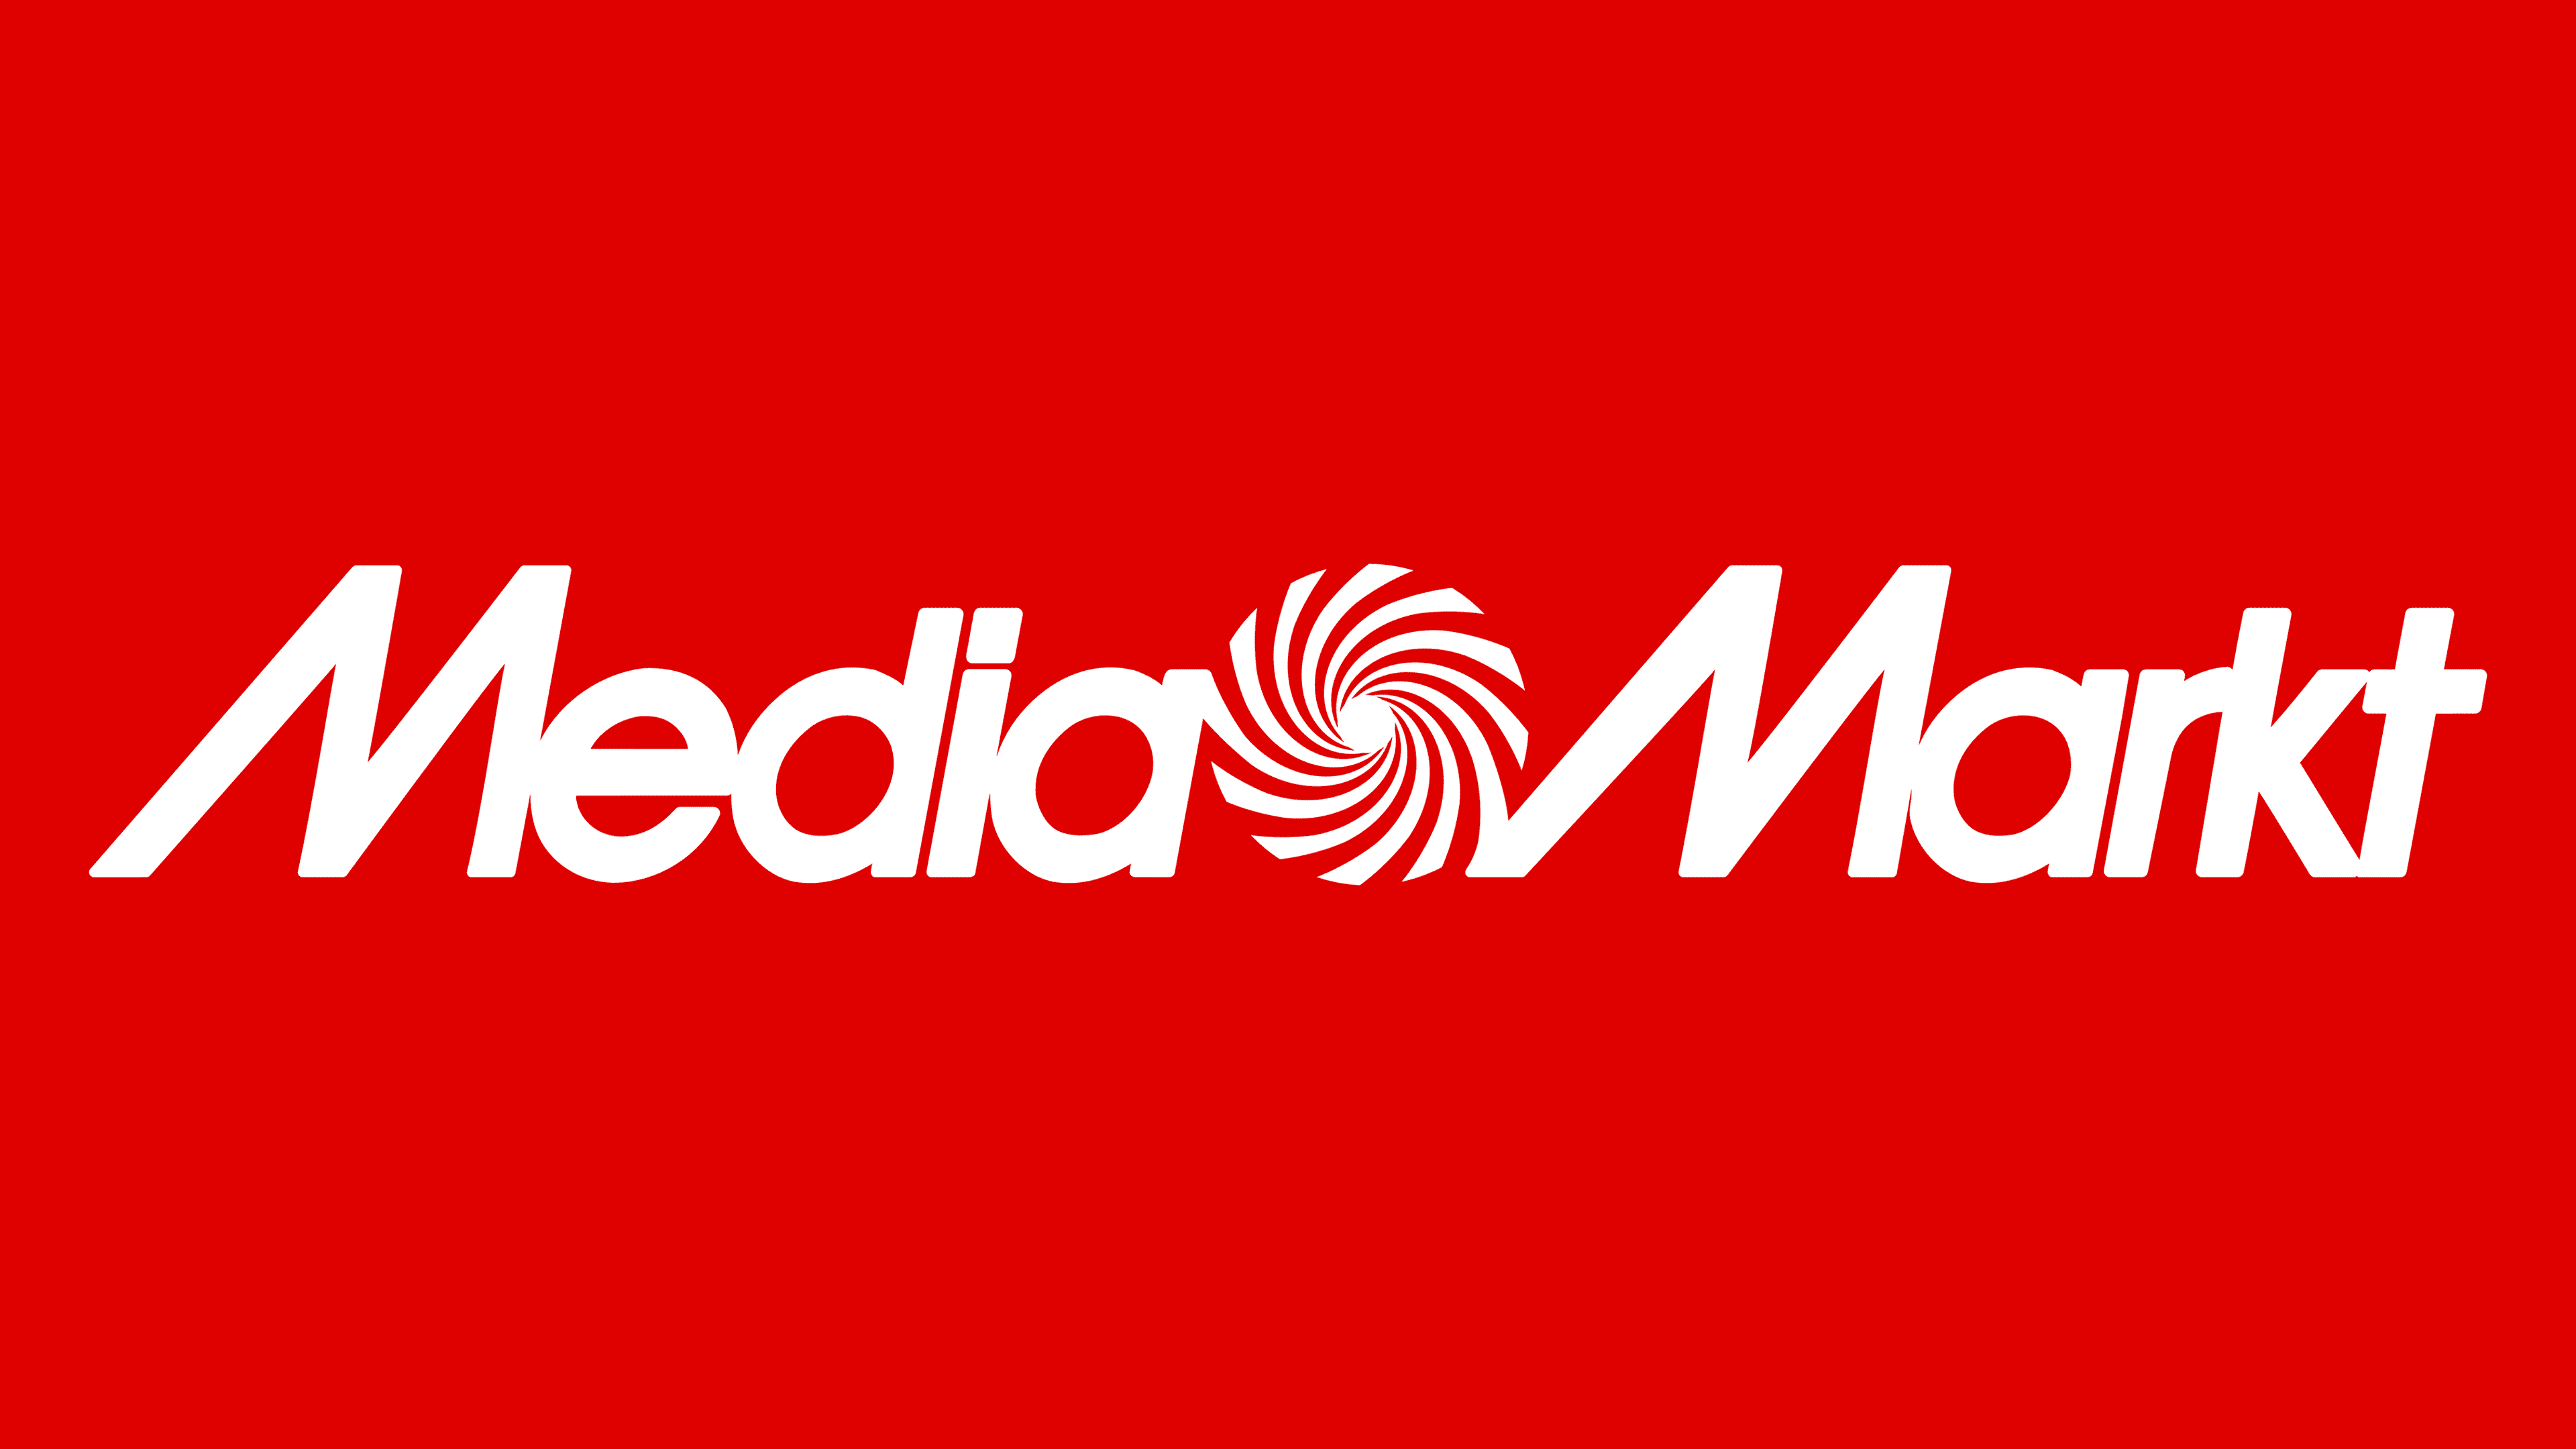 Media Markt Logo, symbol, meaning, history,